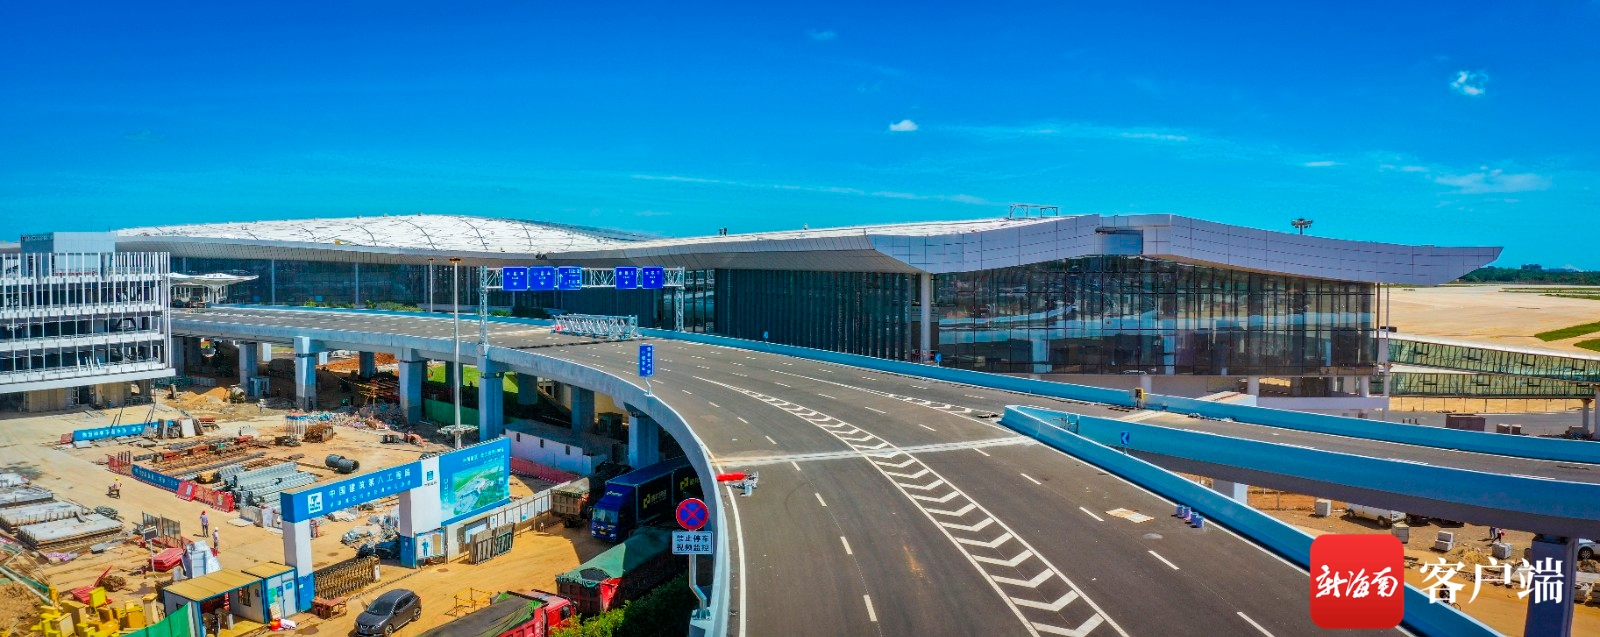 海口美兰机场二期主体工程即将完工
-国际快递价格